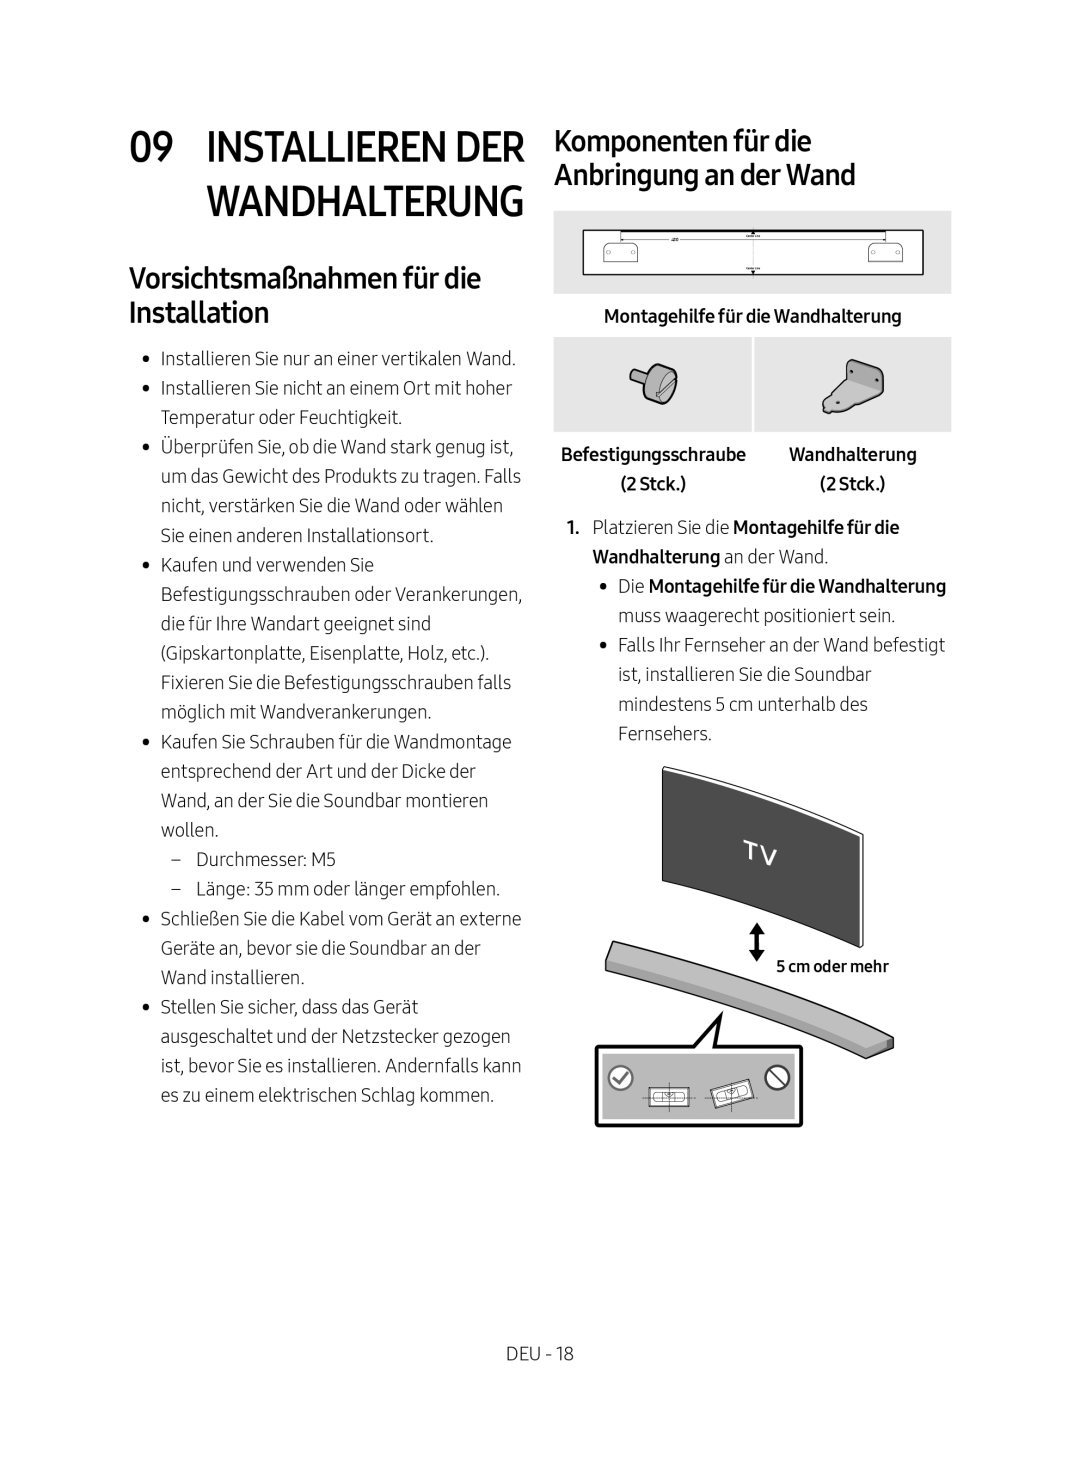 Samsung HW-M4500/EN manual Installieren der Wandhalterung, Vorsichtsmaßnahmen für die Installation, Cm oder mehr 